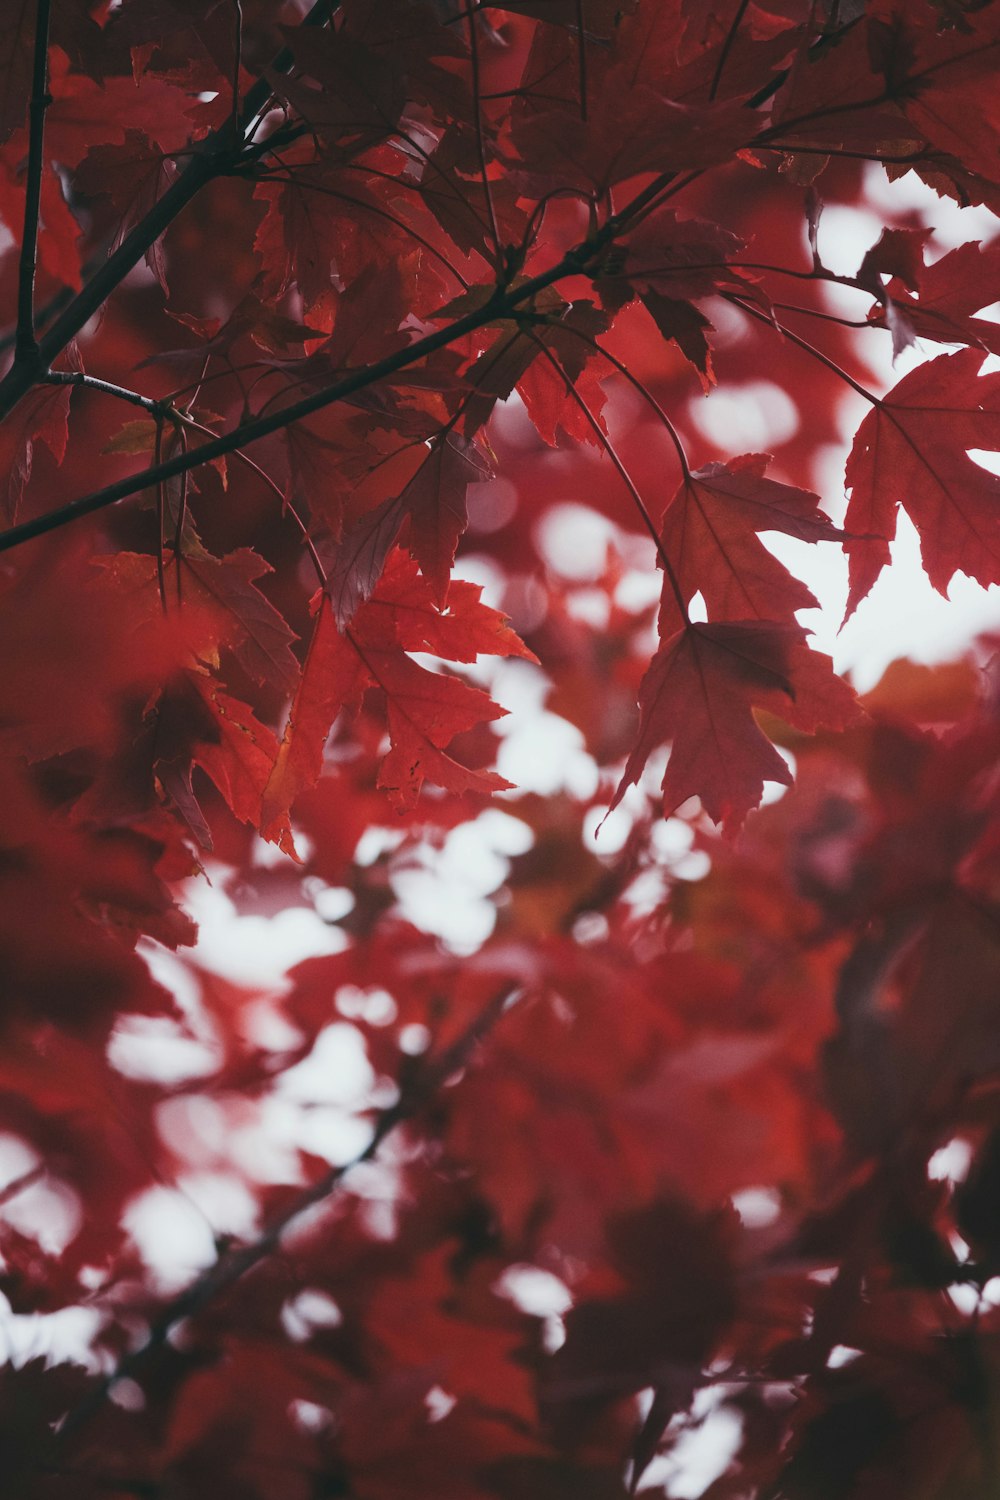 Cây phong đỏ là biểu tượng của sự sôi động, tươi trẻ và vui tươi. Hãy xem ảnh để thưởng thức cảnh tượng đầy màu sắc của một cây phong đỏ trong ngày thu, khiến bạn luôn cảm thấy ngọt ngào và ấm áp.